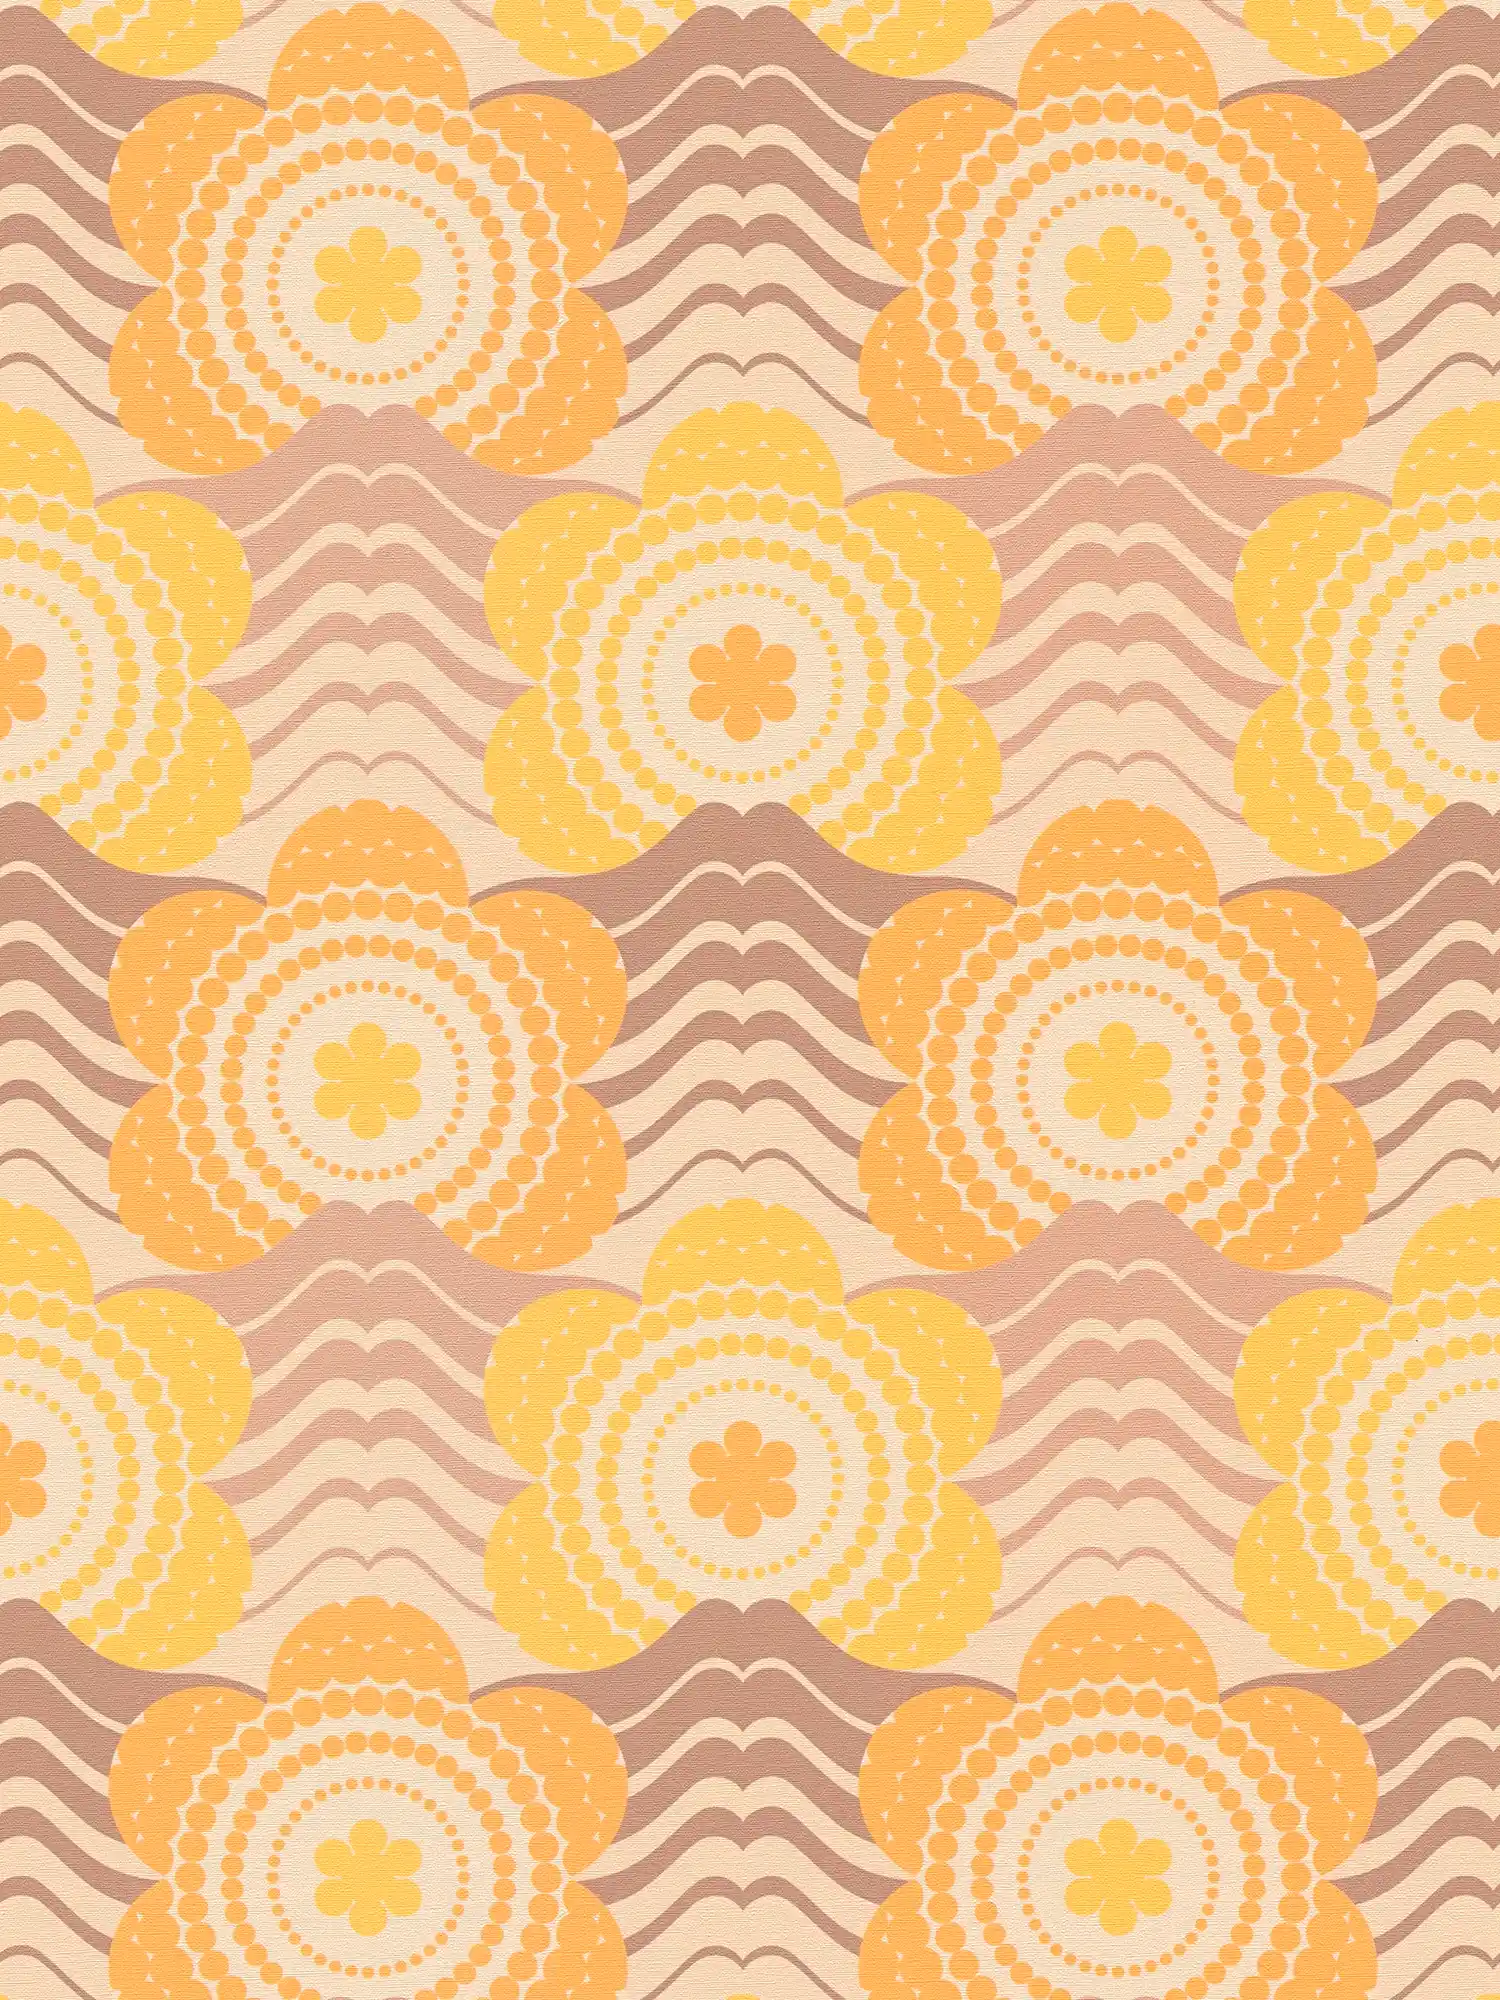 Vliestapete mit floralem Muster im Stil der 70er Jahre – Beige, Braun, Orange
